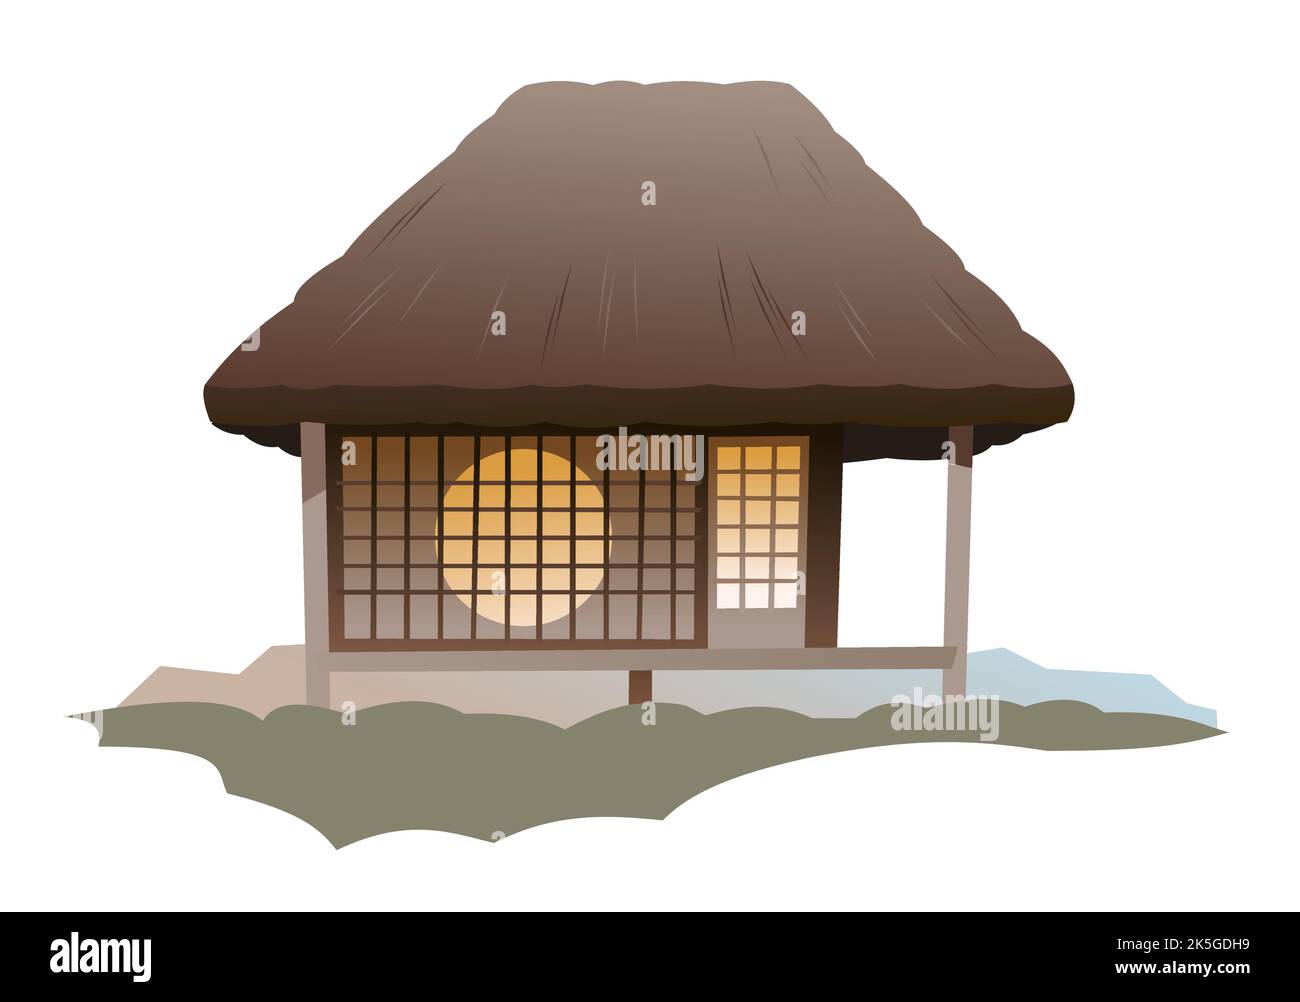 Maison japonaise traditionnelle. Avec fenêtre ronde. Habitation rurale avec toit de chaume. Illustration vecteur. Illustration de Vecteur